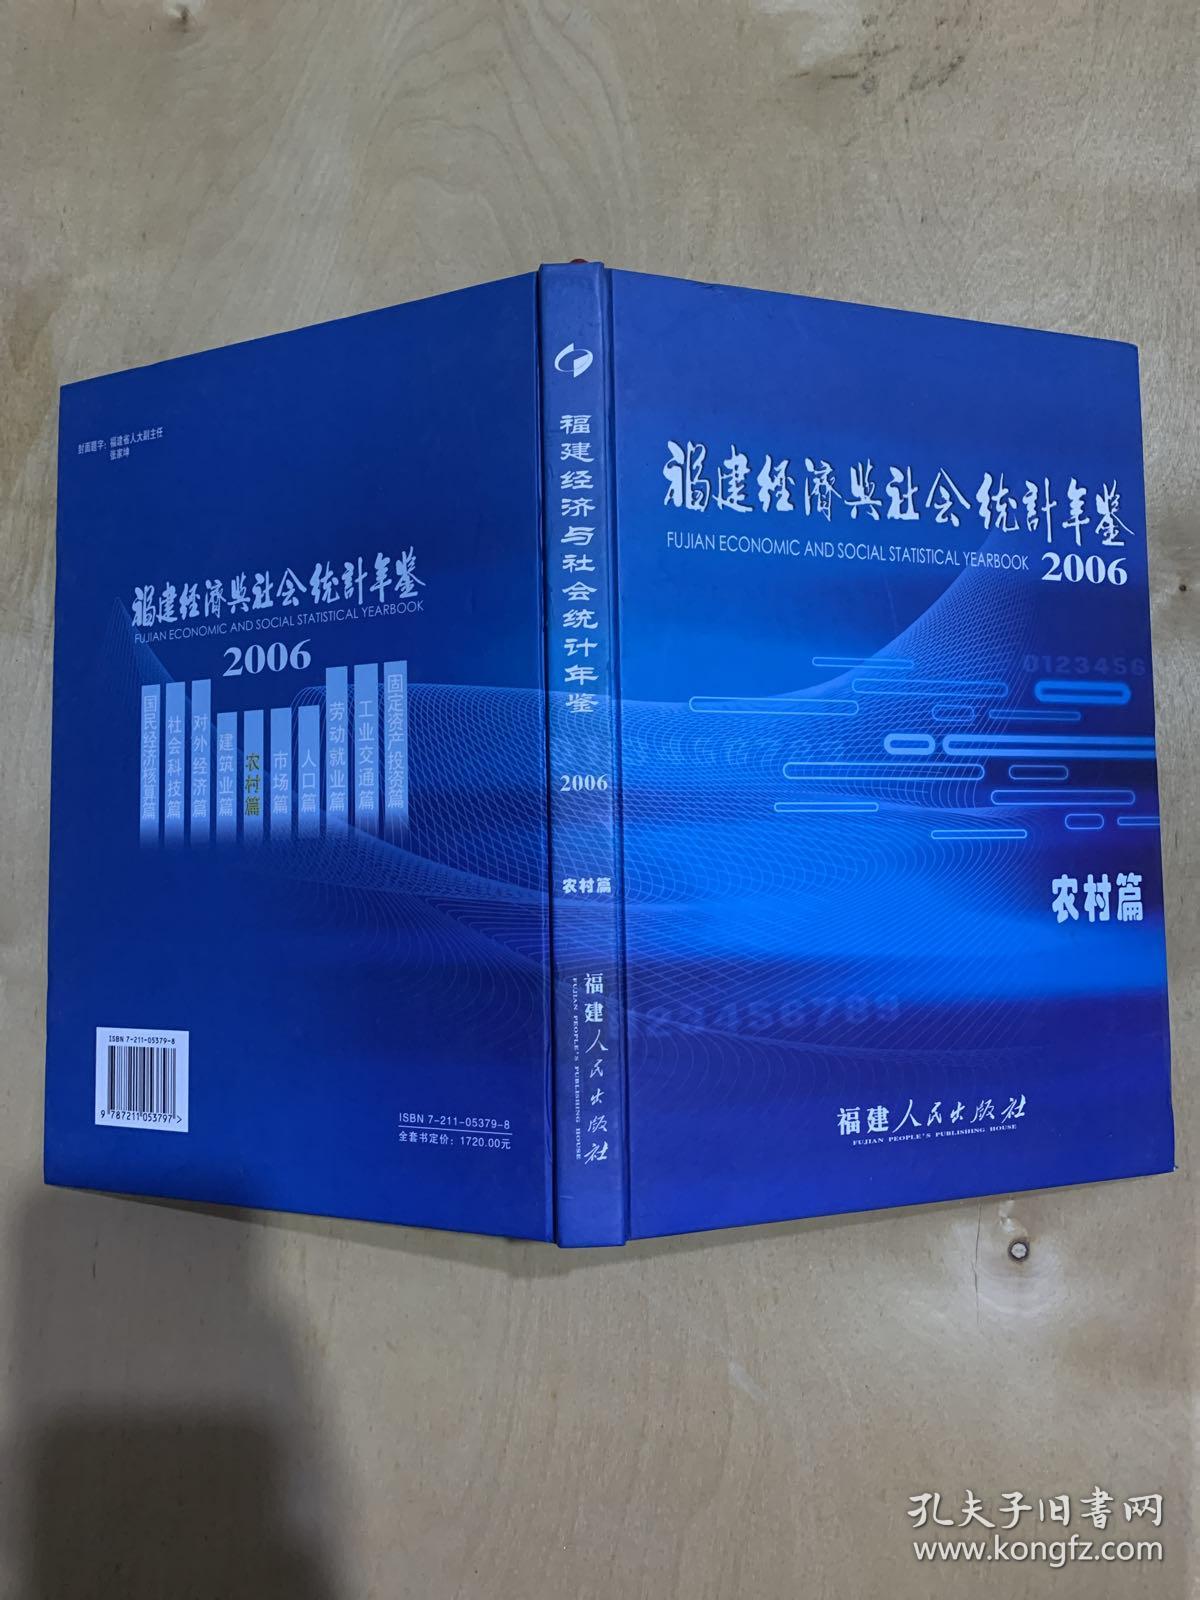 福建经济与社会统计年鉴 2006农村篇